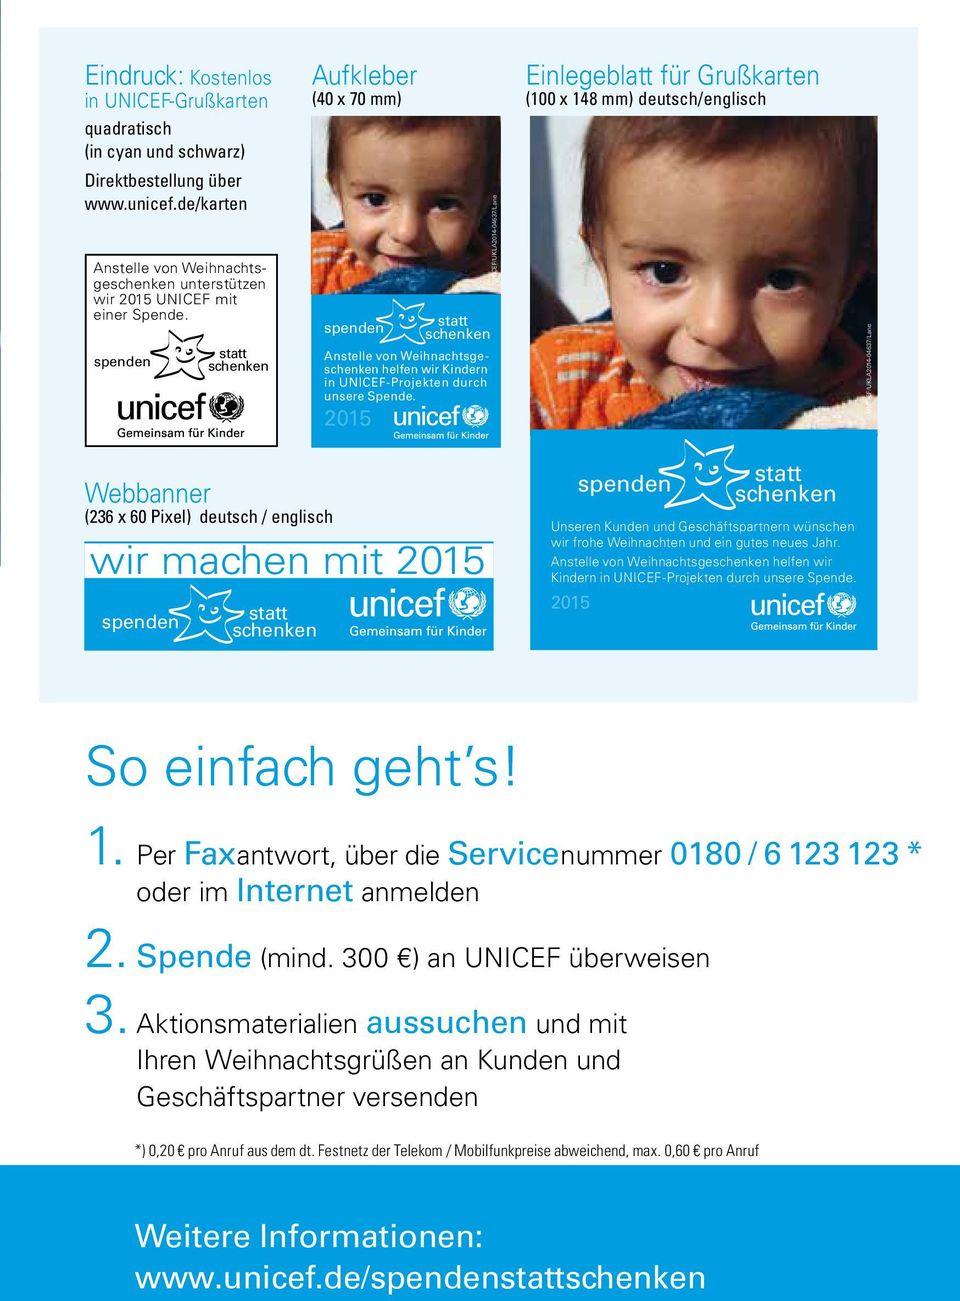 2015 UNICEF/UKLA2014-04637/Lane Einlegeblatt für Grußkarten (100 x 148 mm) deutsch/englisch UNICEF/UKLA2014-04637/Lane Webbanner (236 x 60 Pixel) deutsch / englisch wir machen mit 2015 Unseren Kunden